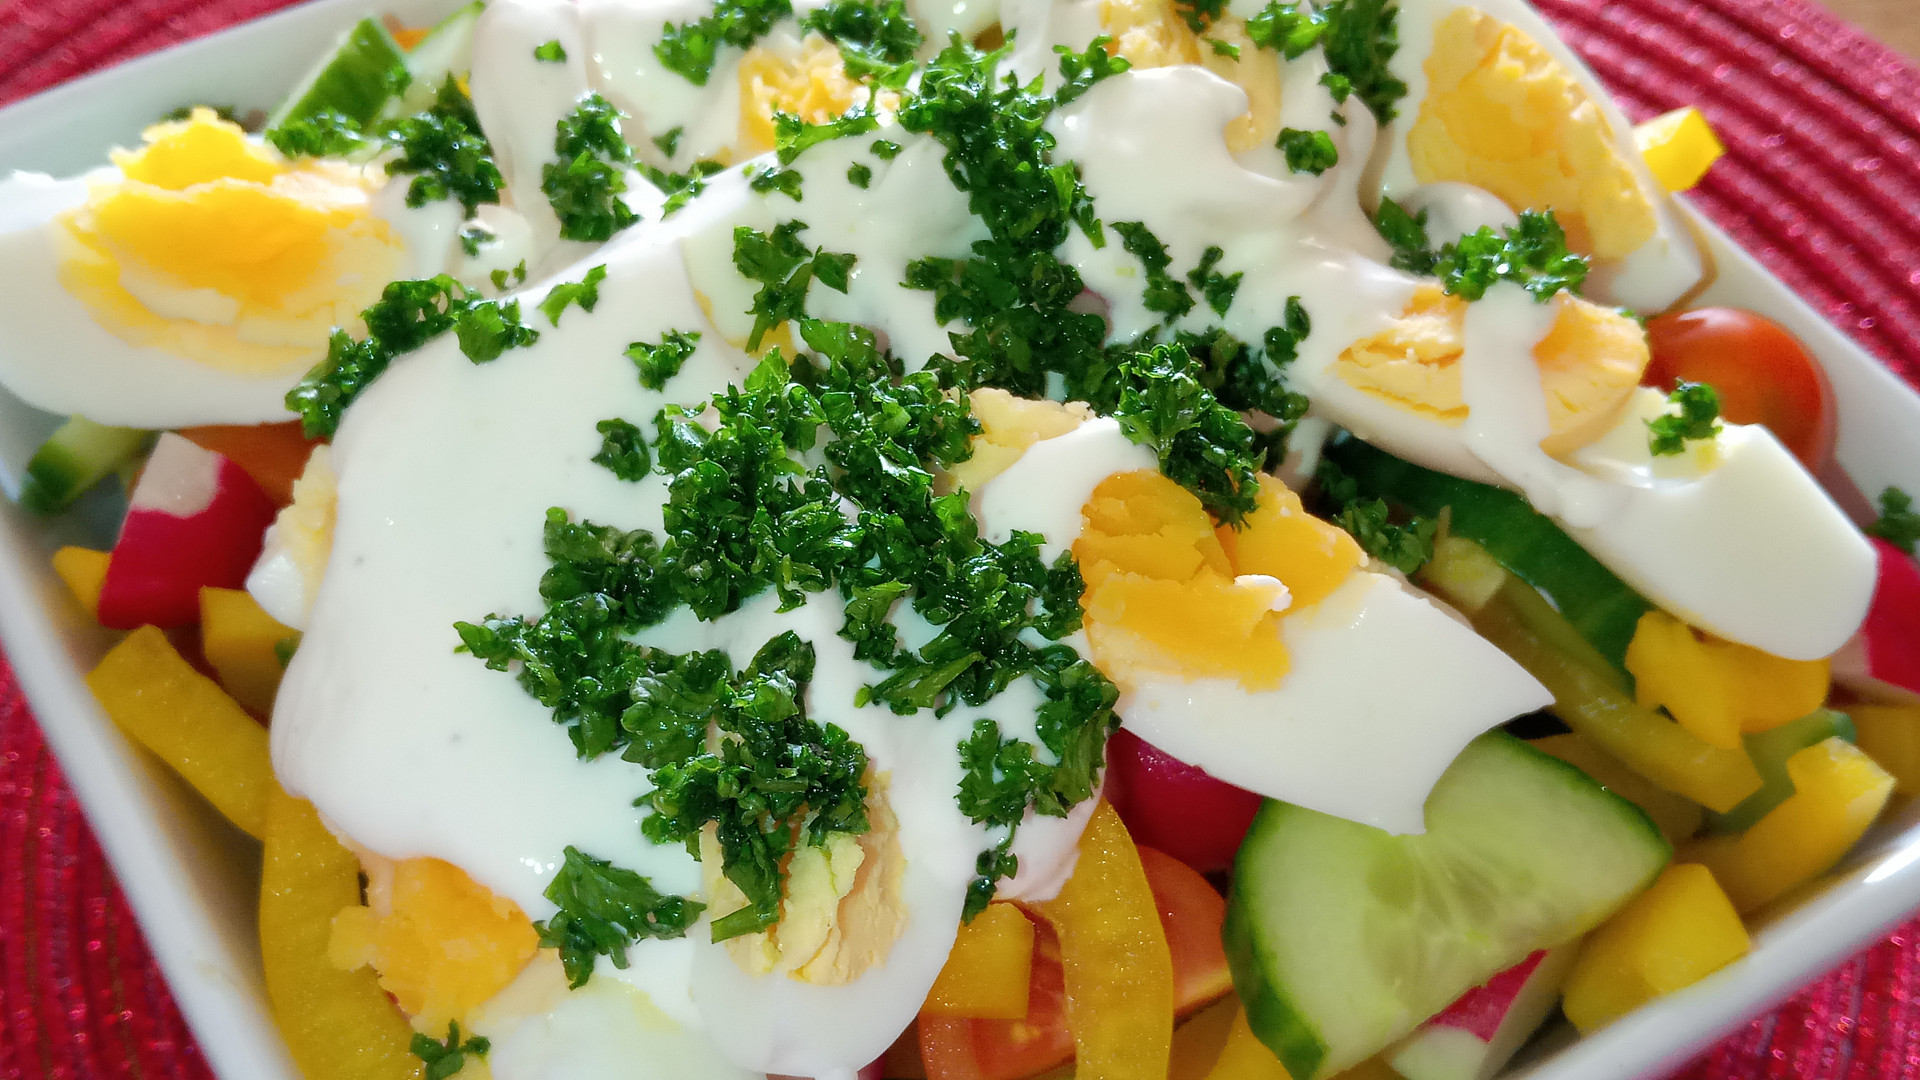 Barevný zeleninový salát s vejci